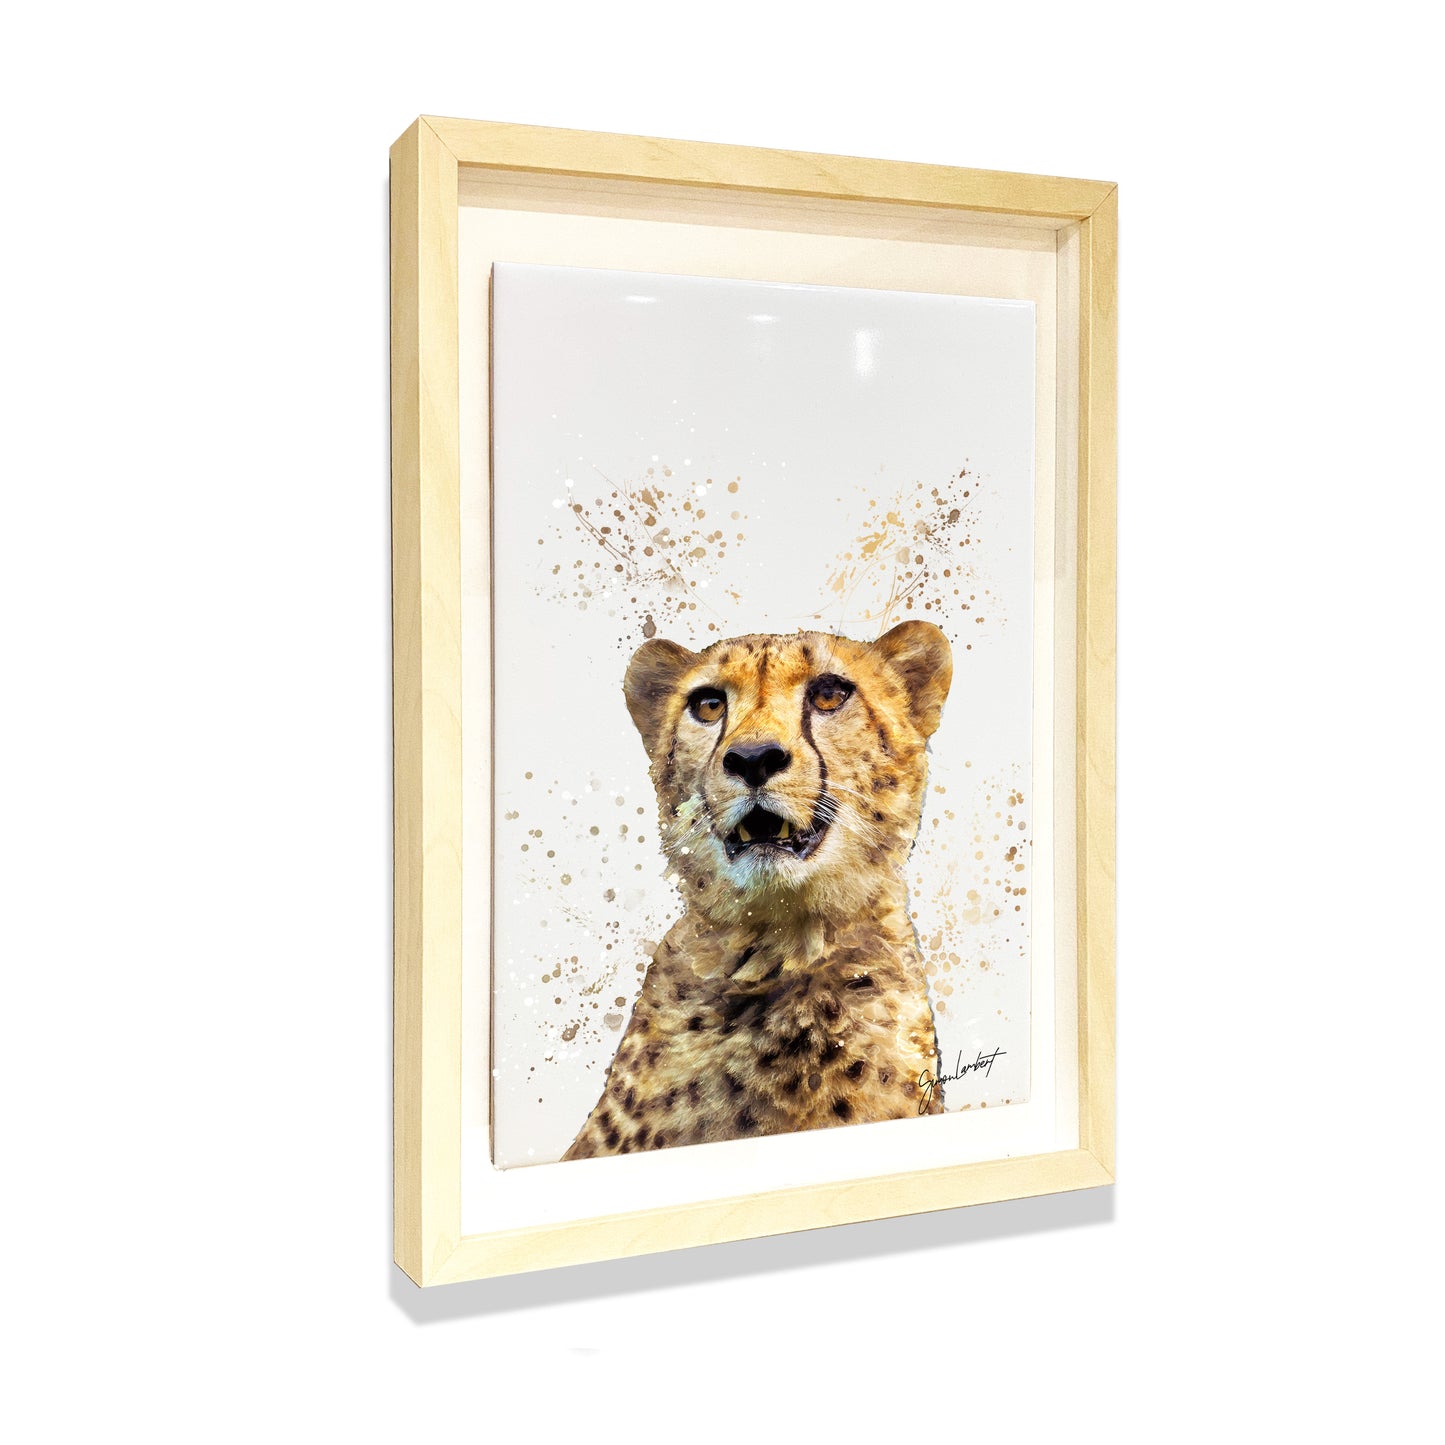 Cheetah Portrait Brush Splatter Style Artwork - Framed CERAMIC TILE Art